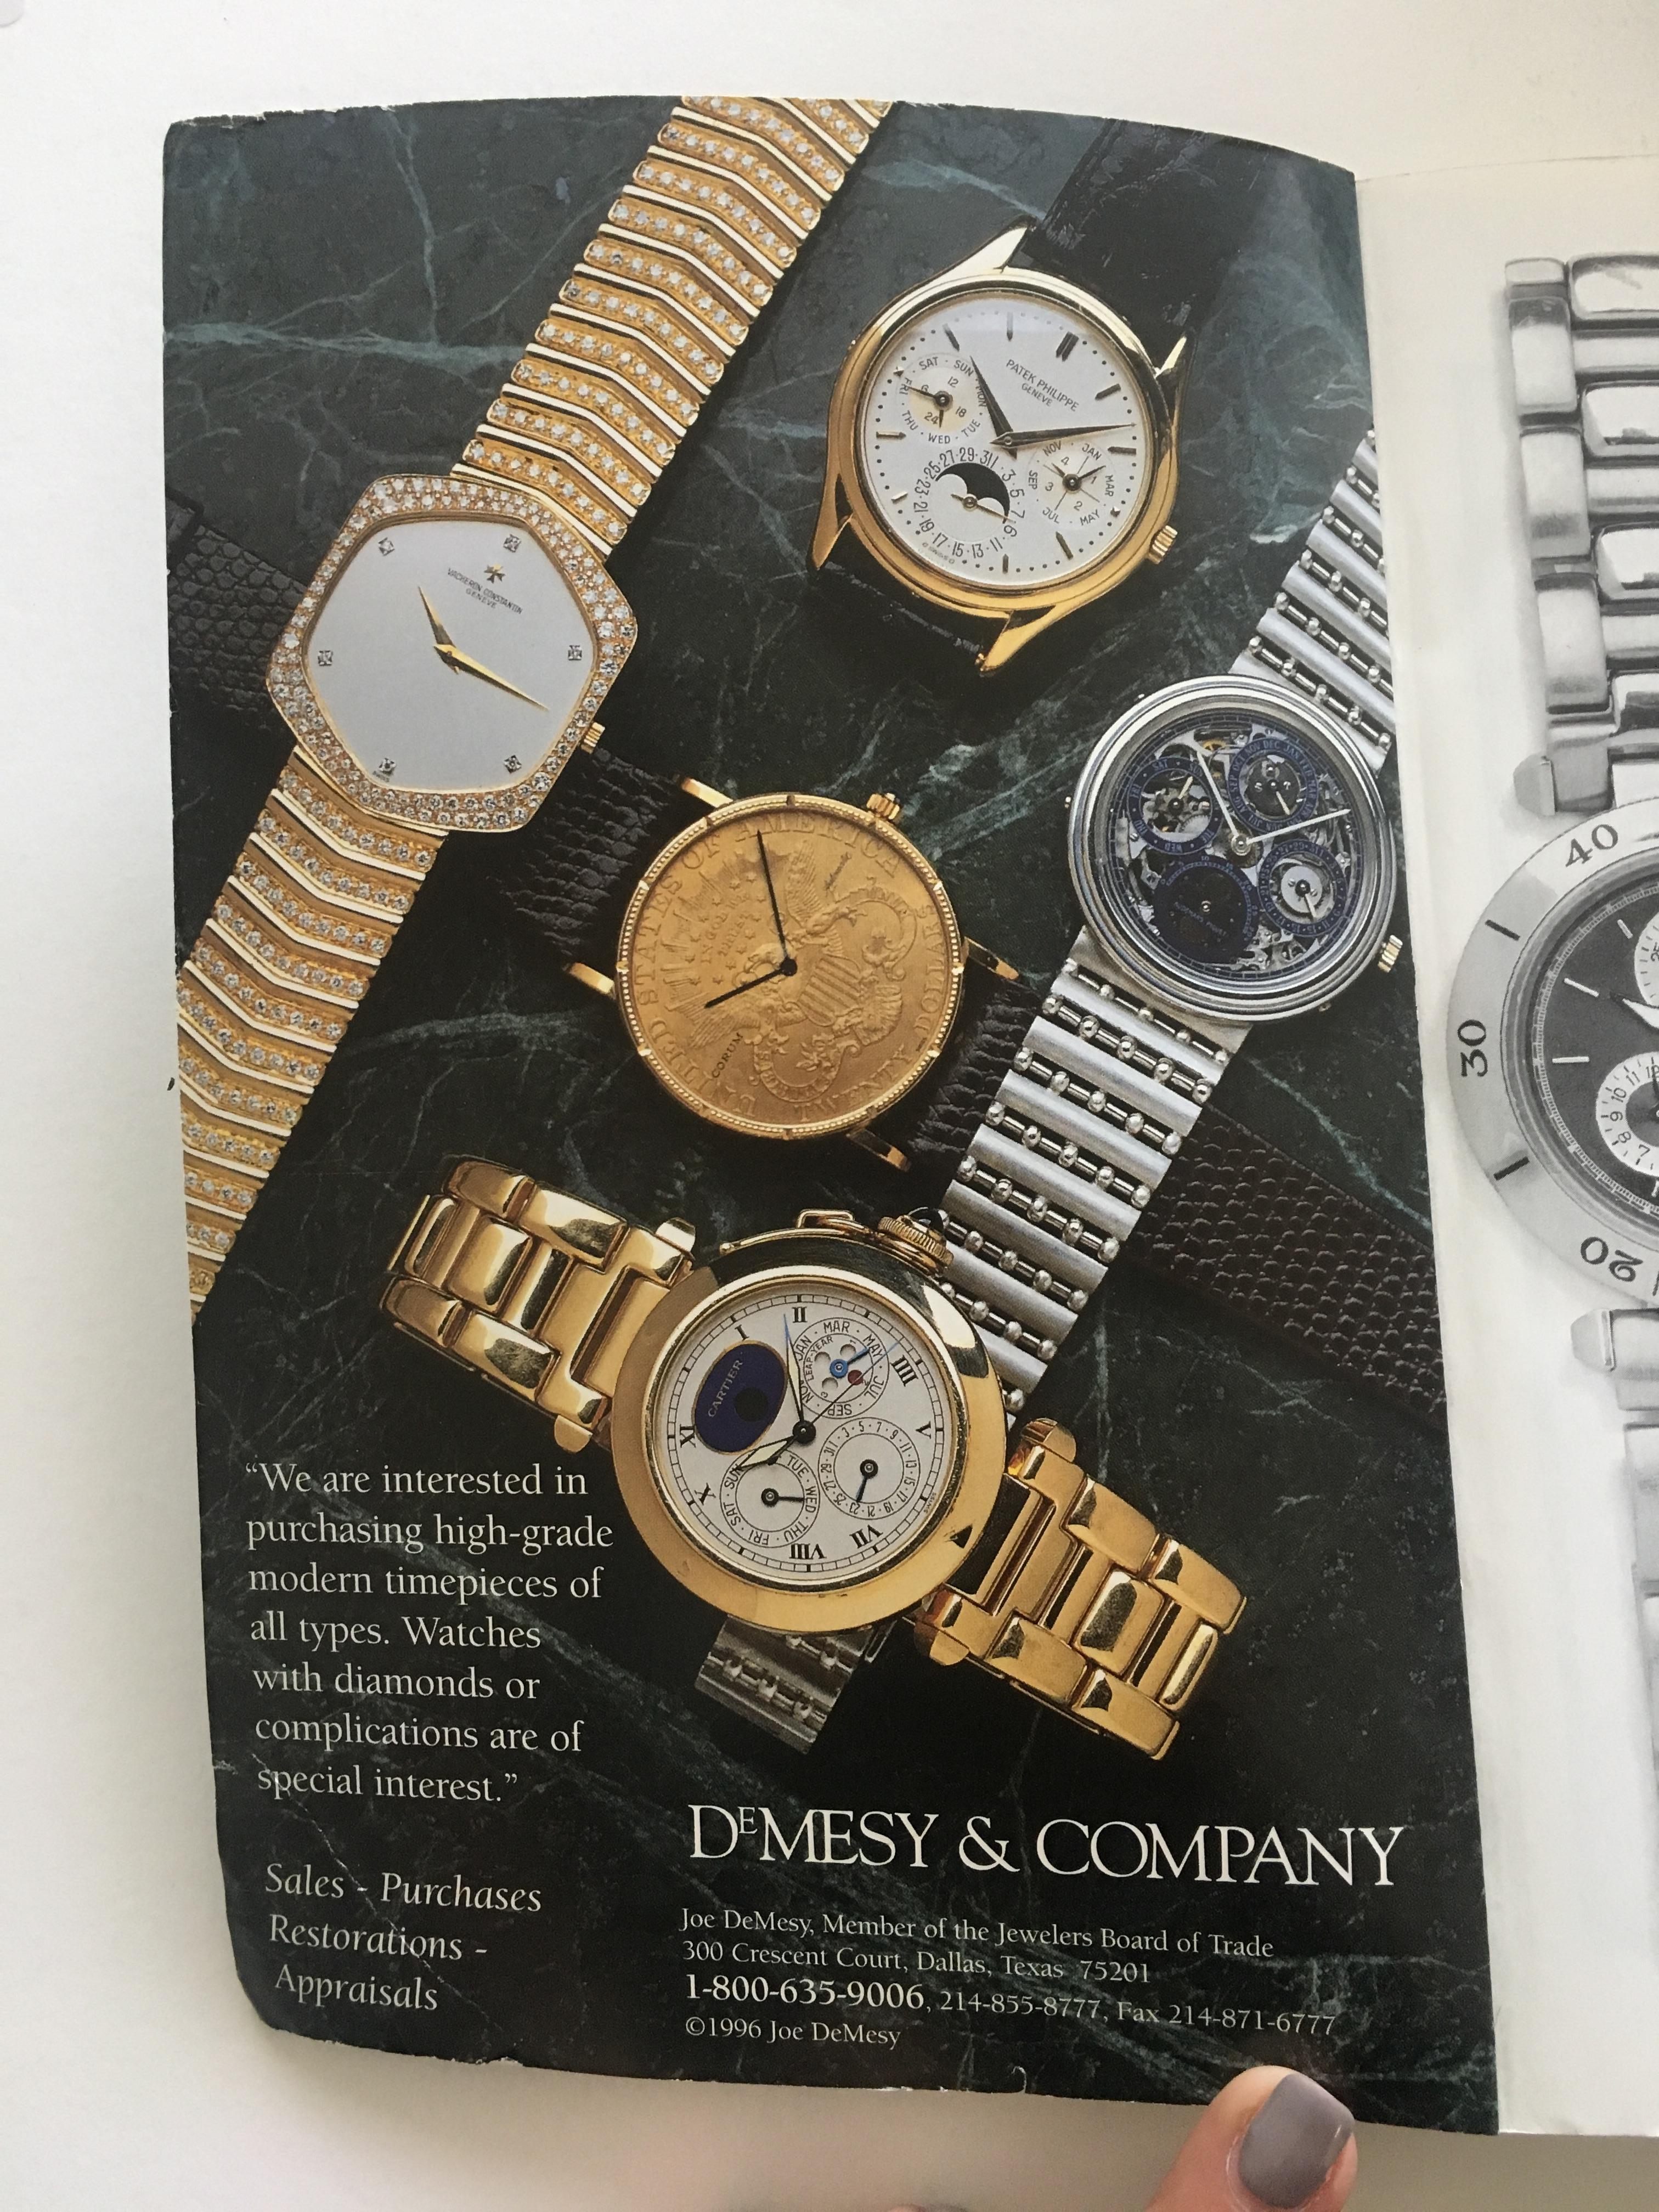 VOLUME 7: Vintage American & European Silver Anniversary Wristwatch Price Guide Veröffentlicht im Jahr 1996